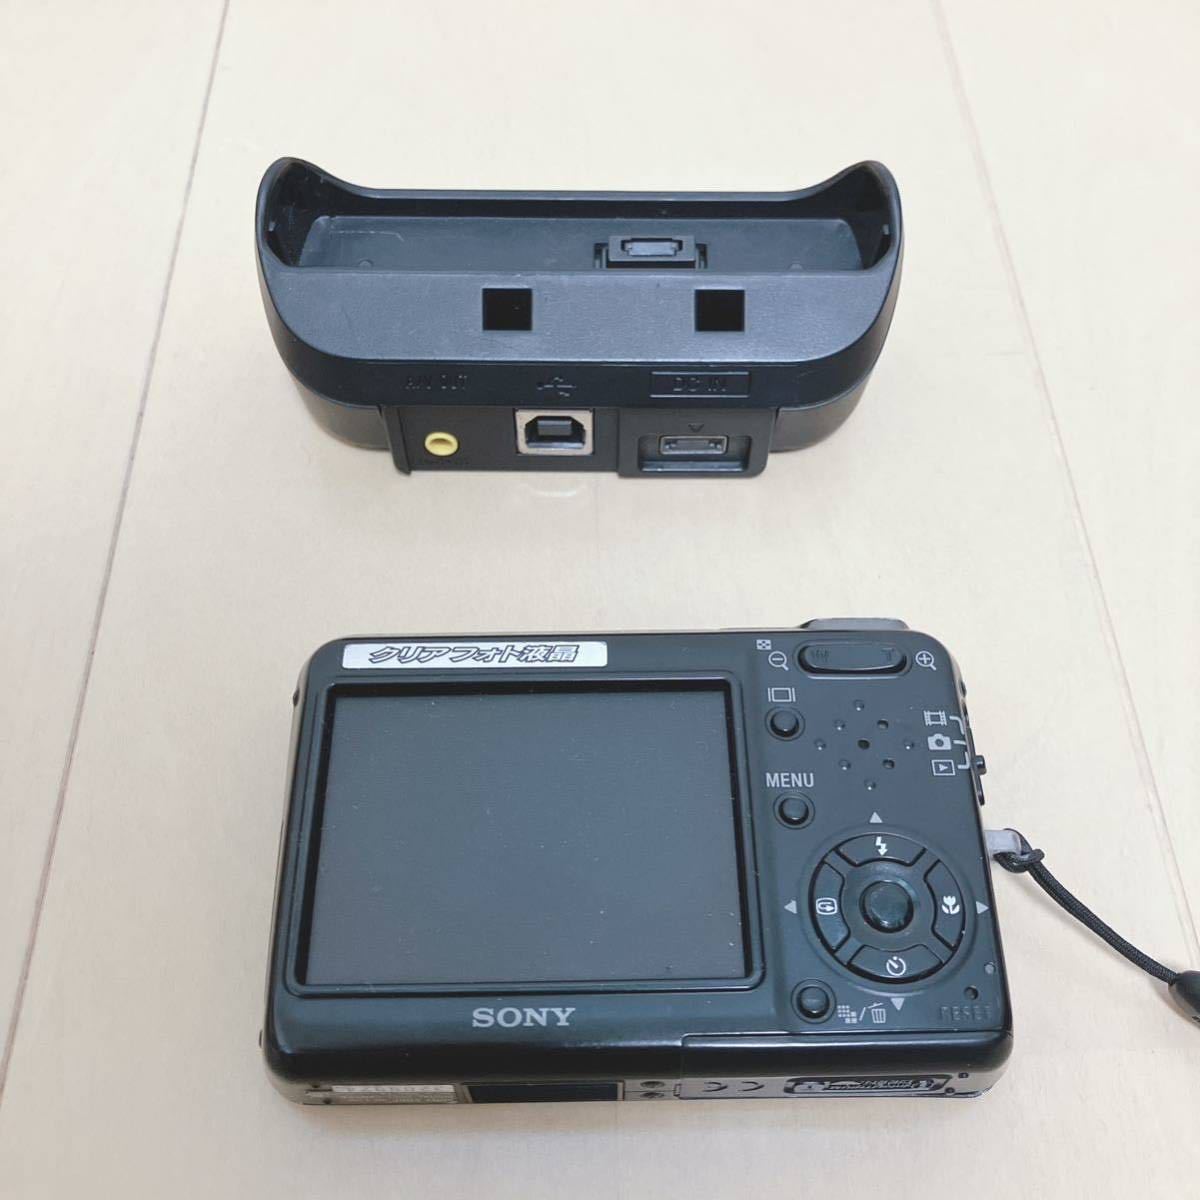 SONY Cyber-shot デジカメ DSC-T3 充電器付 デジタルカメラ ソニー サイバーショット ブラック ジャンク品の画像3